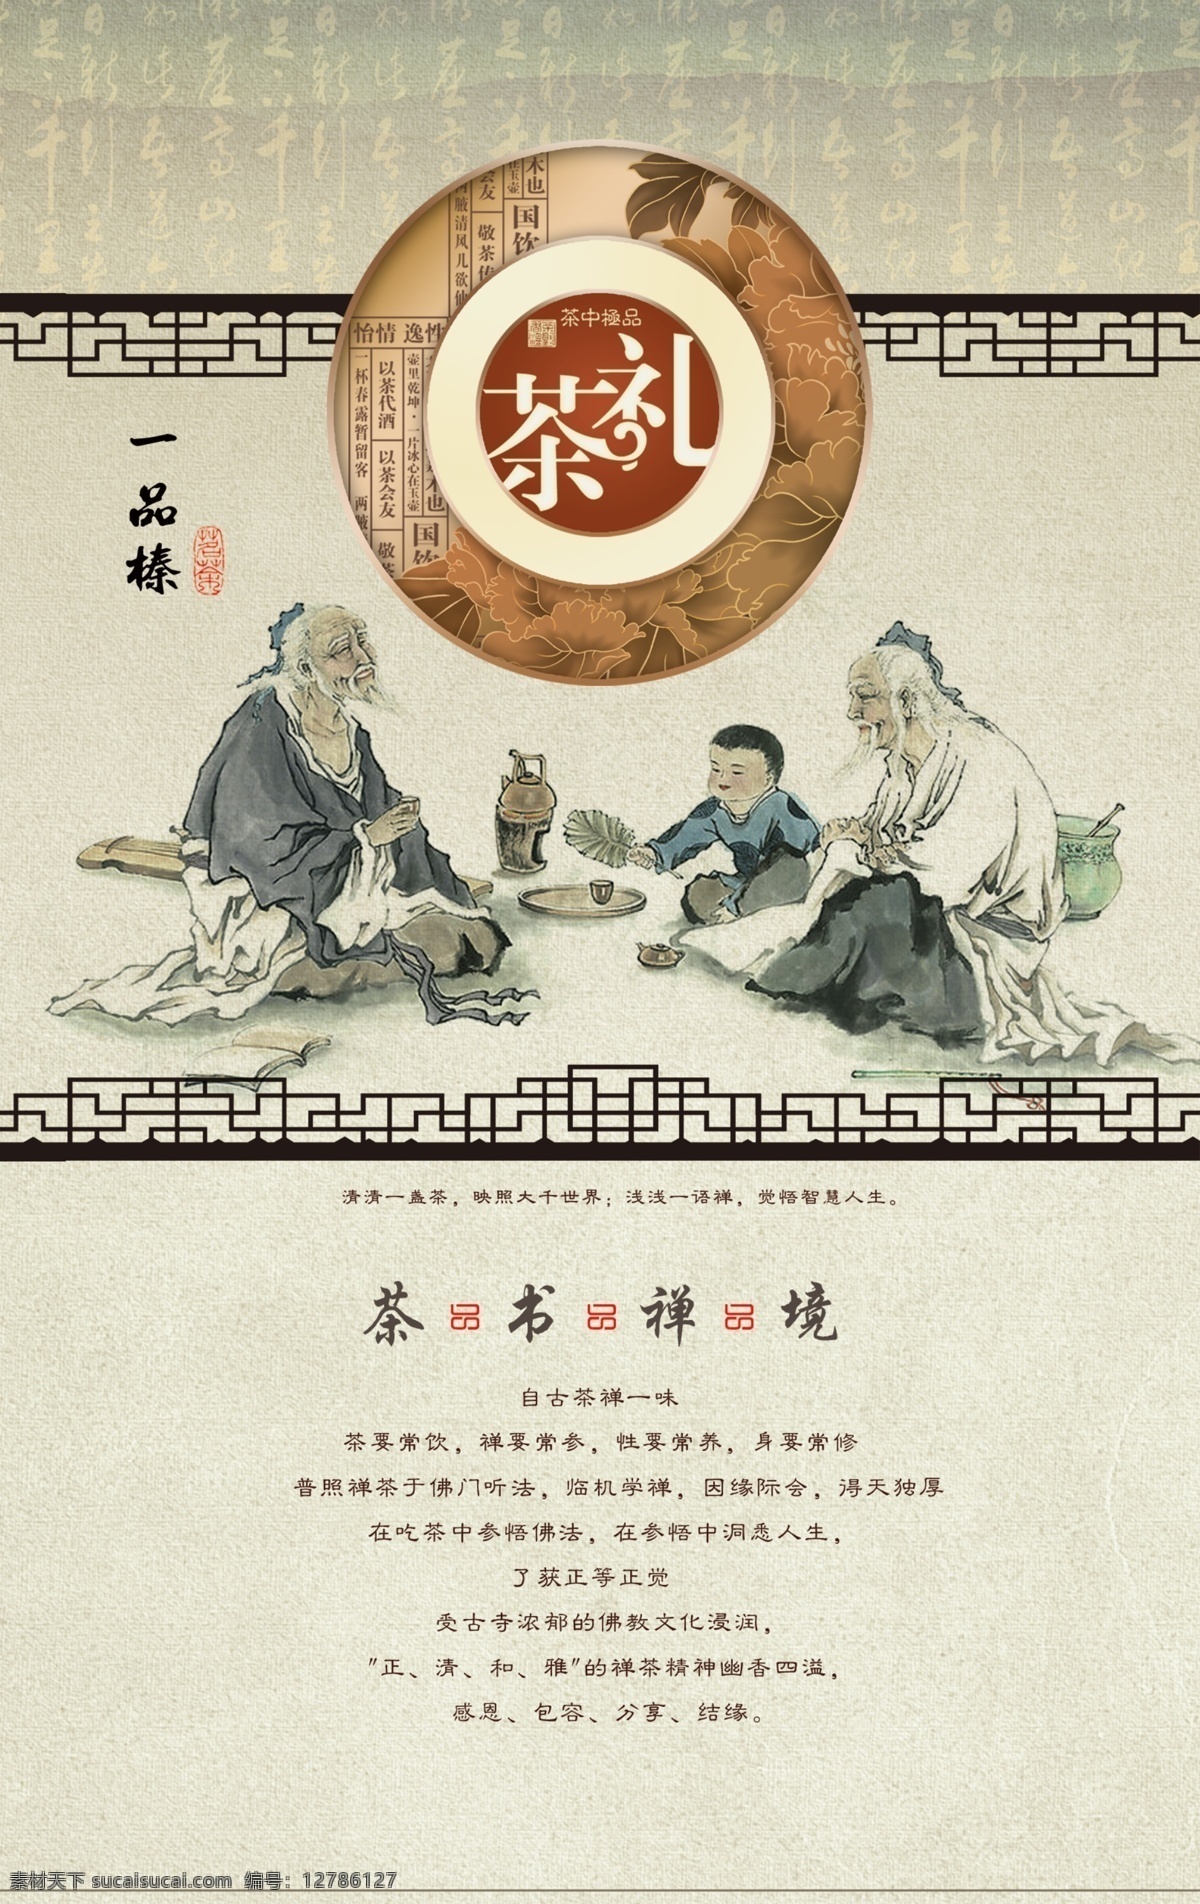 中国 文化 茶 礼 展板 写真 中国文化 茶礼 牡丹 边框 古代人物 单 页 海报 dm